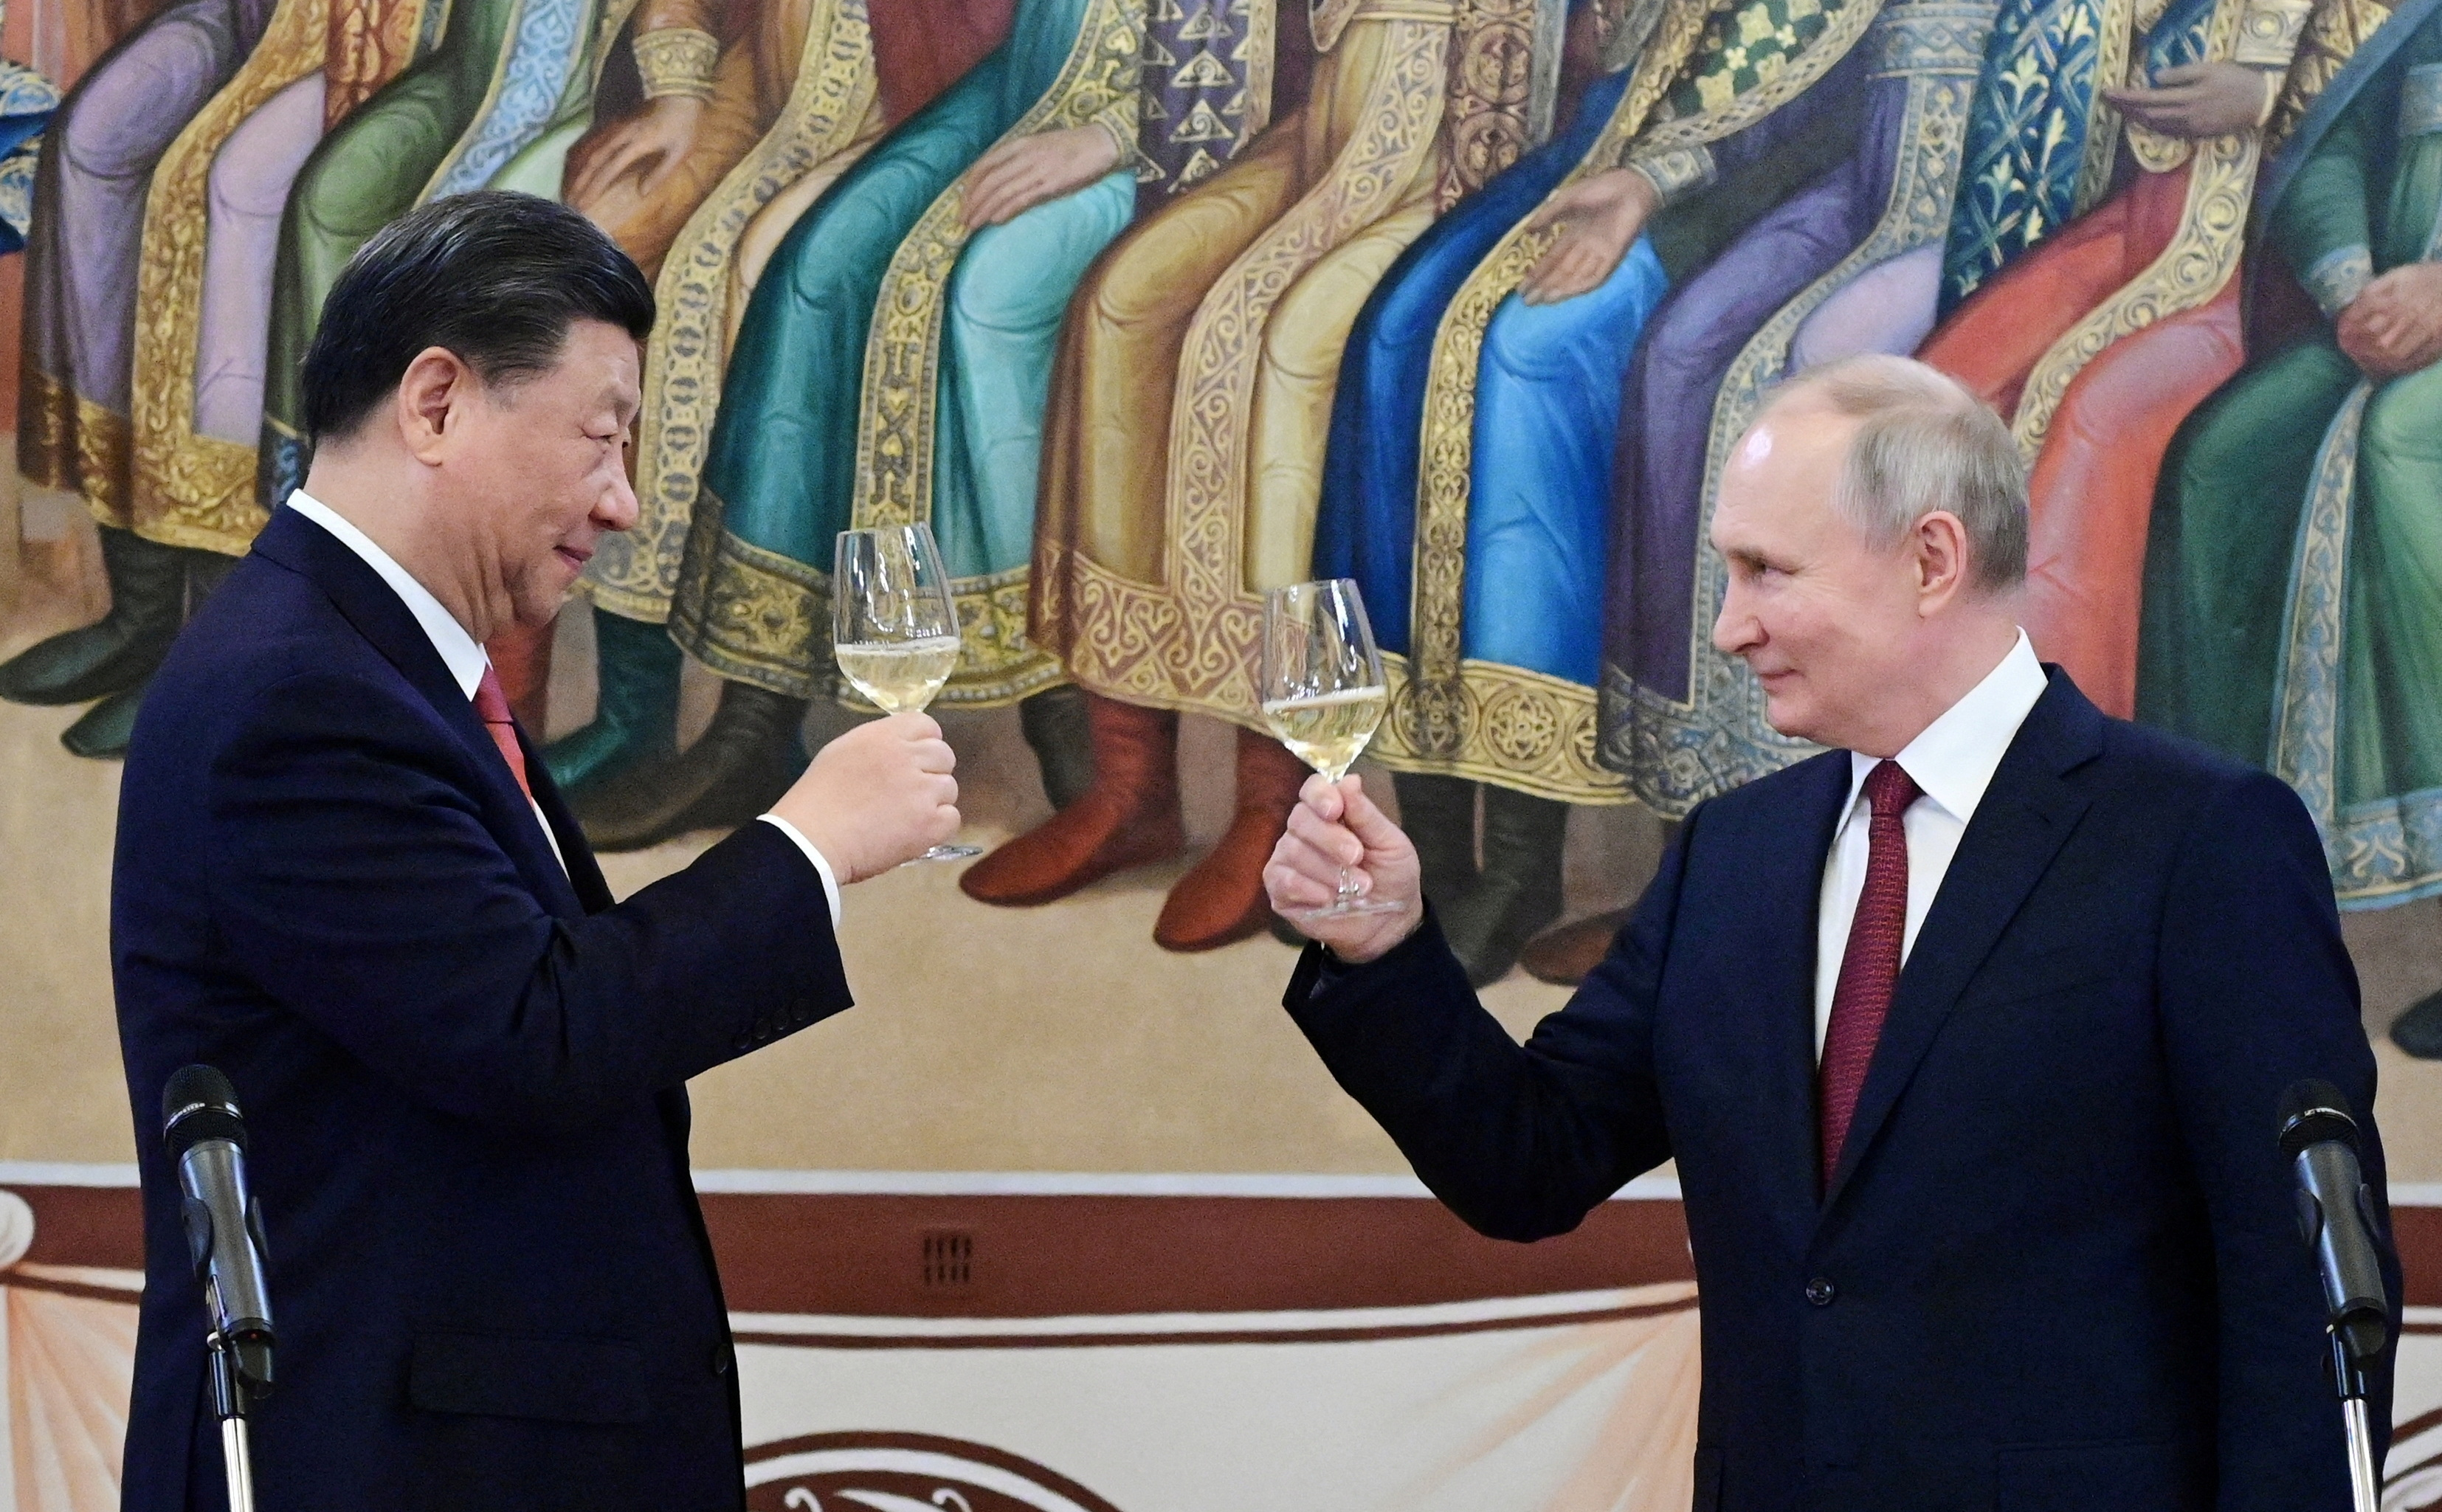 El presidente ruso, Vladimir Putin, y el presidente chino, Xi Jinping, asisten a una recepción en el Kremlin en Moscú, Rusia, el 21 de marzo de 2023. Sputnik/Pavel Byrkin/Kremlin vía REUTERS